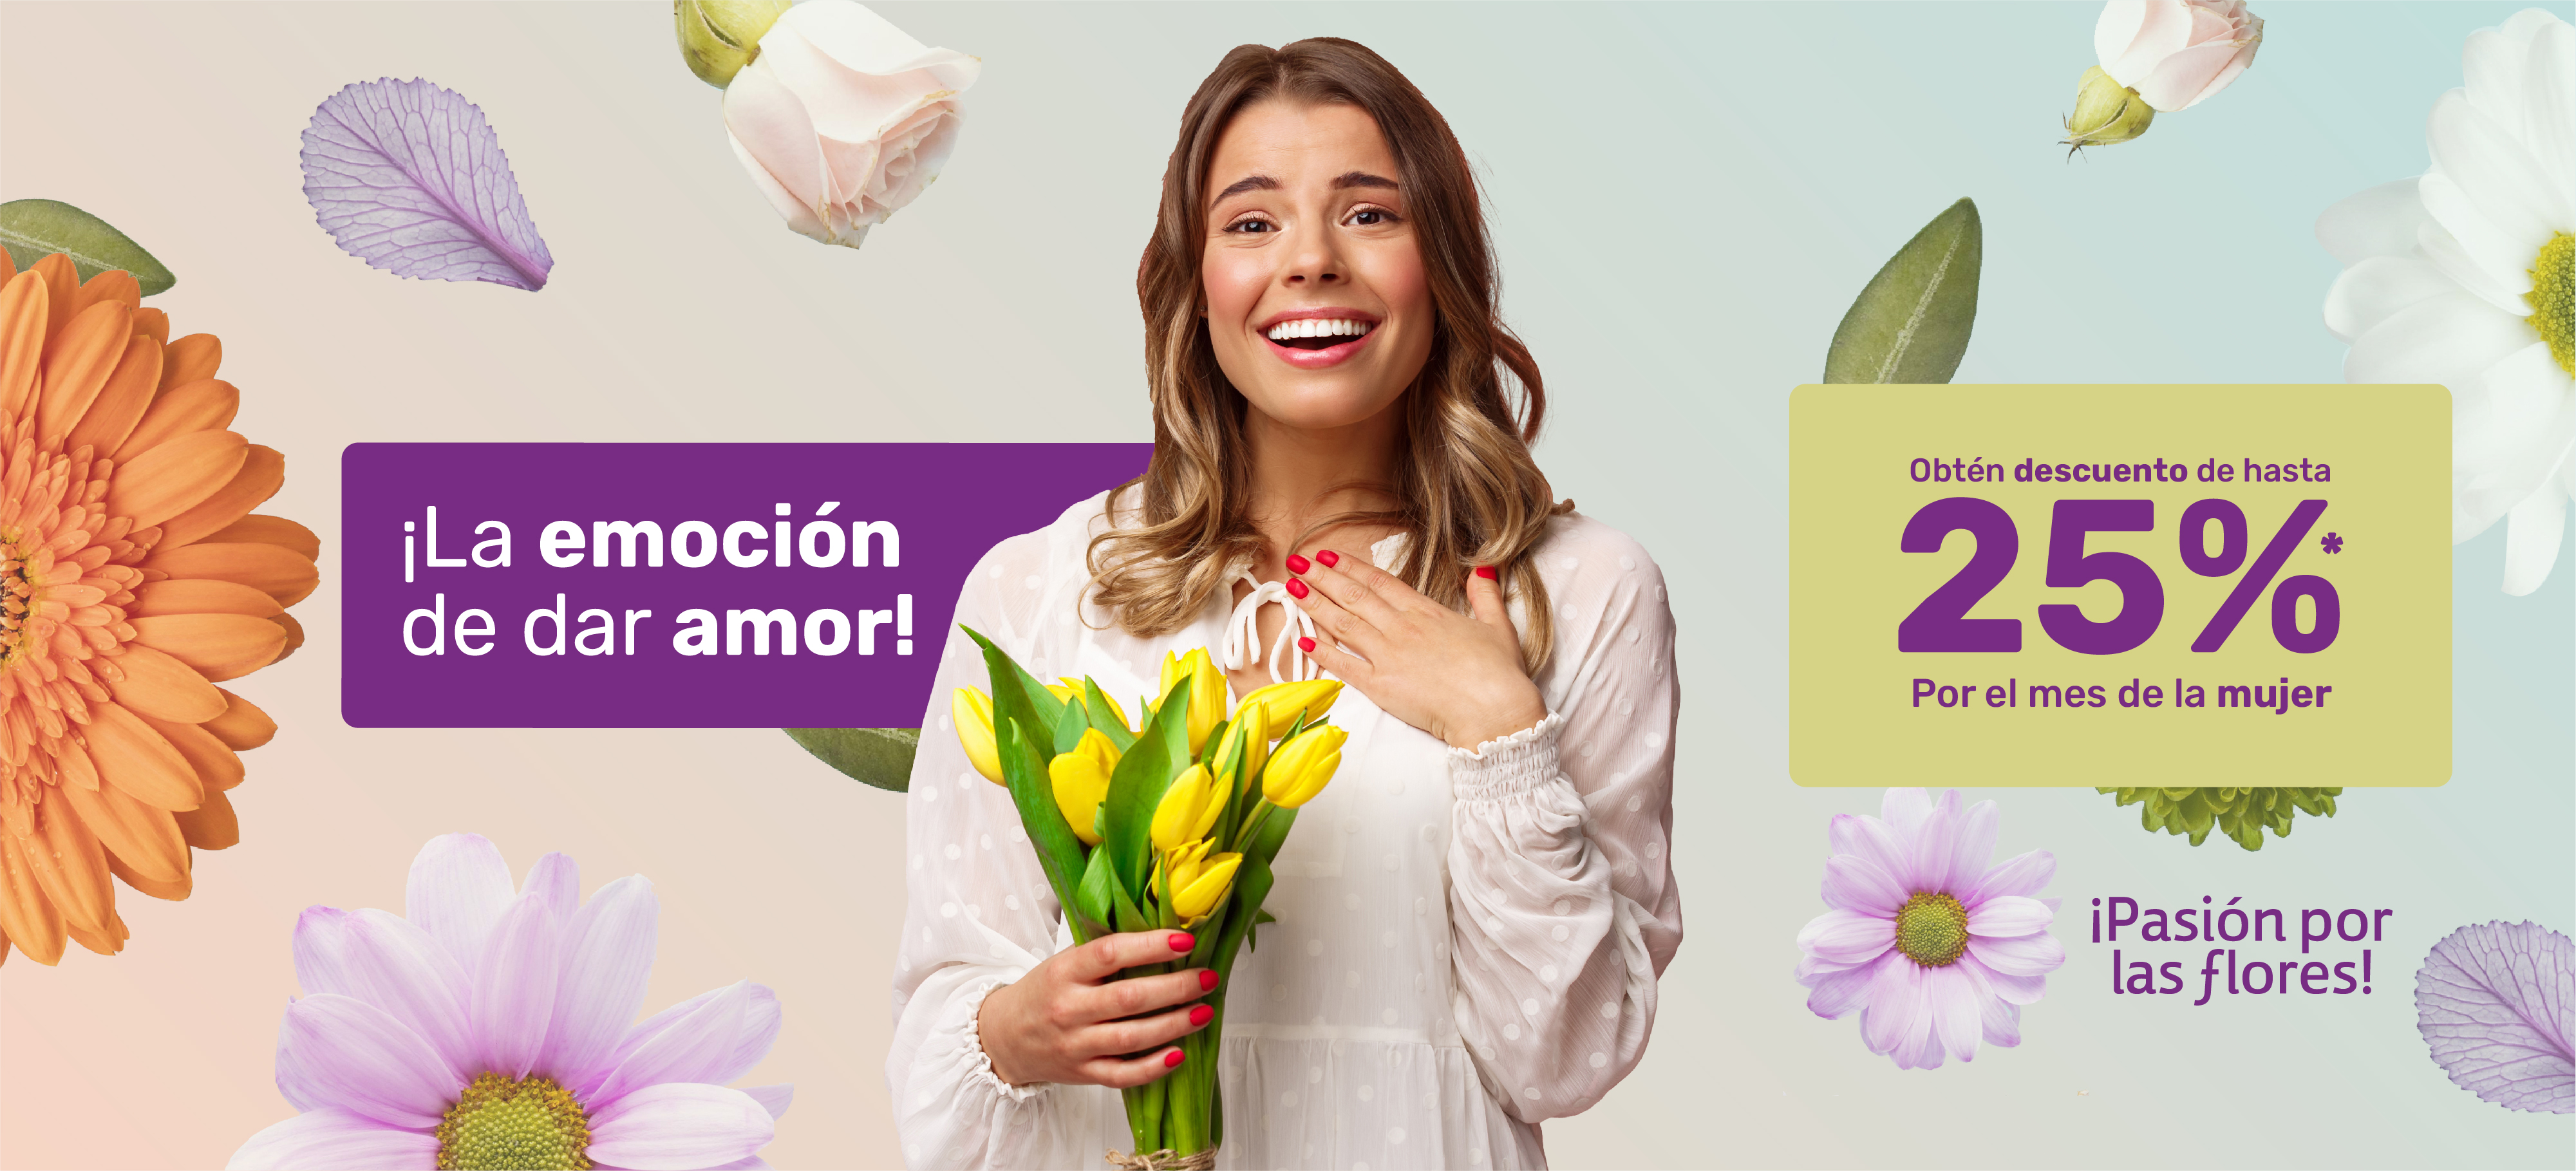 Floria Express: Envía Flores y Regalos a Domicilio en Bogotá, Barranquilla,  Medellín, Cali y Toda Colombia - Pide Hoy